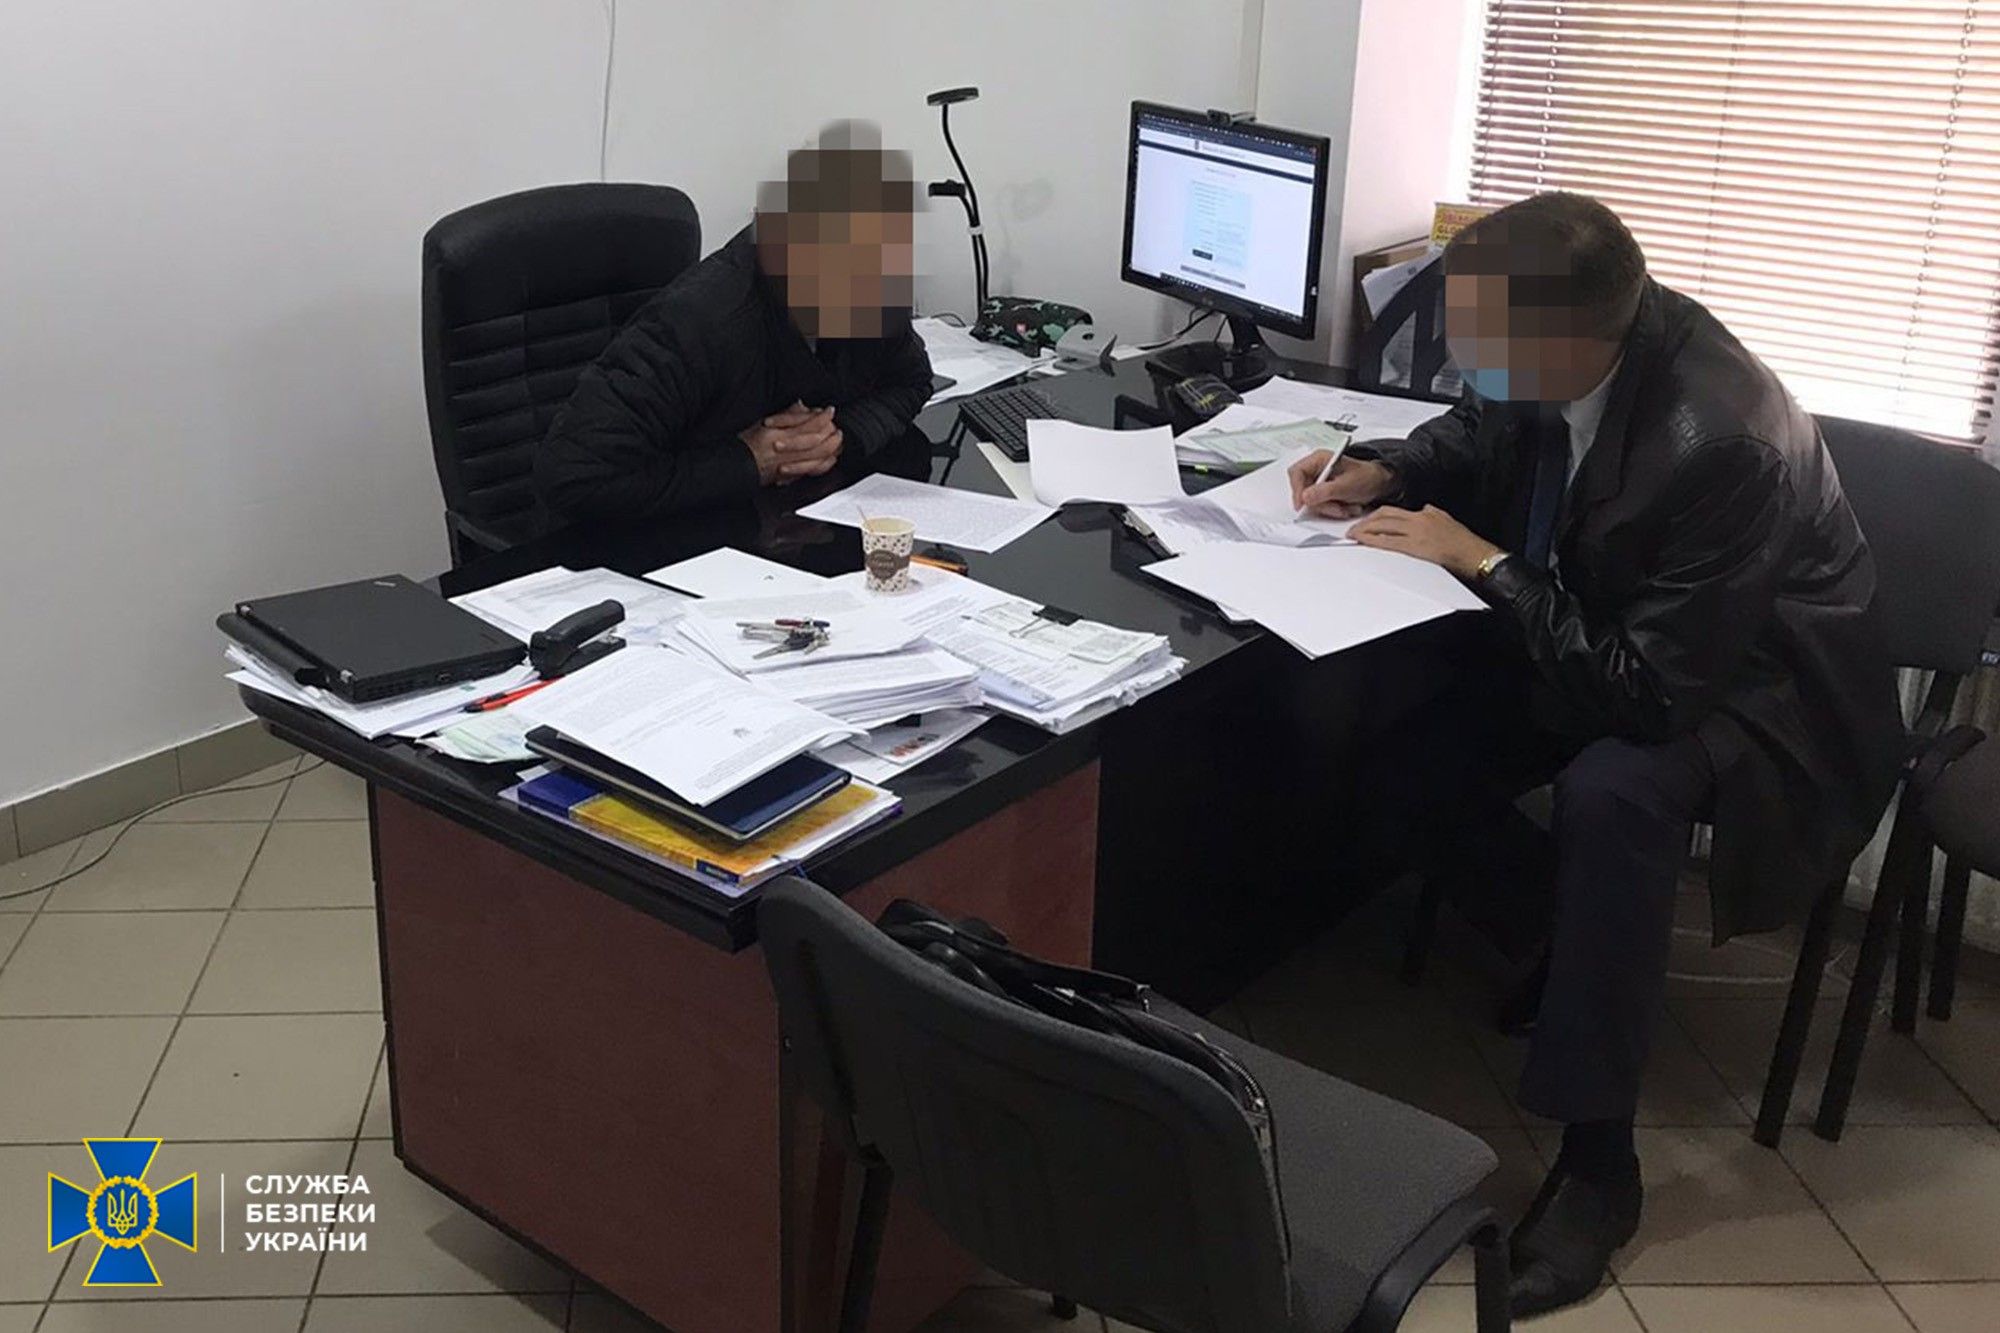 СБУ оголосила підозру трьом причетним до реєстрації «партії Шарія»